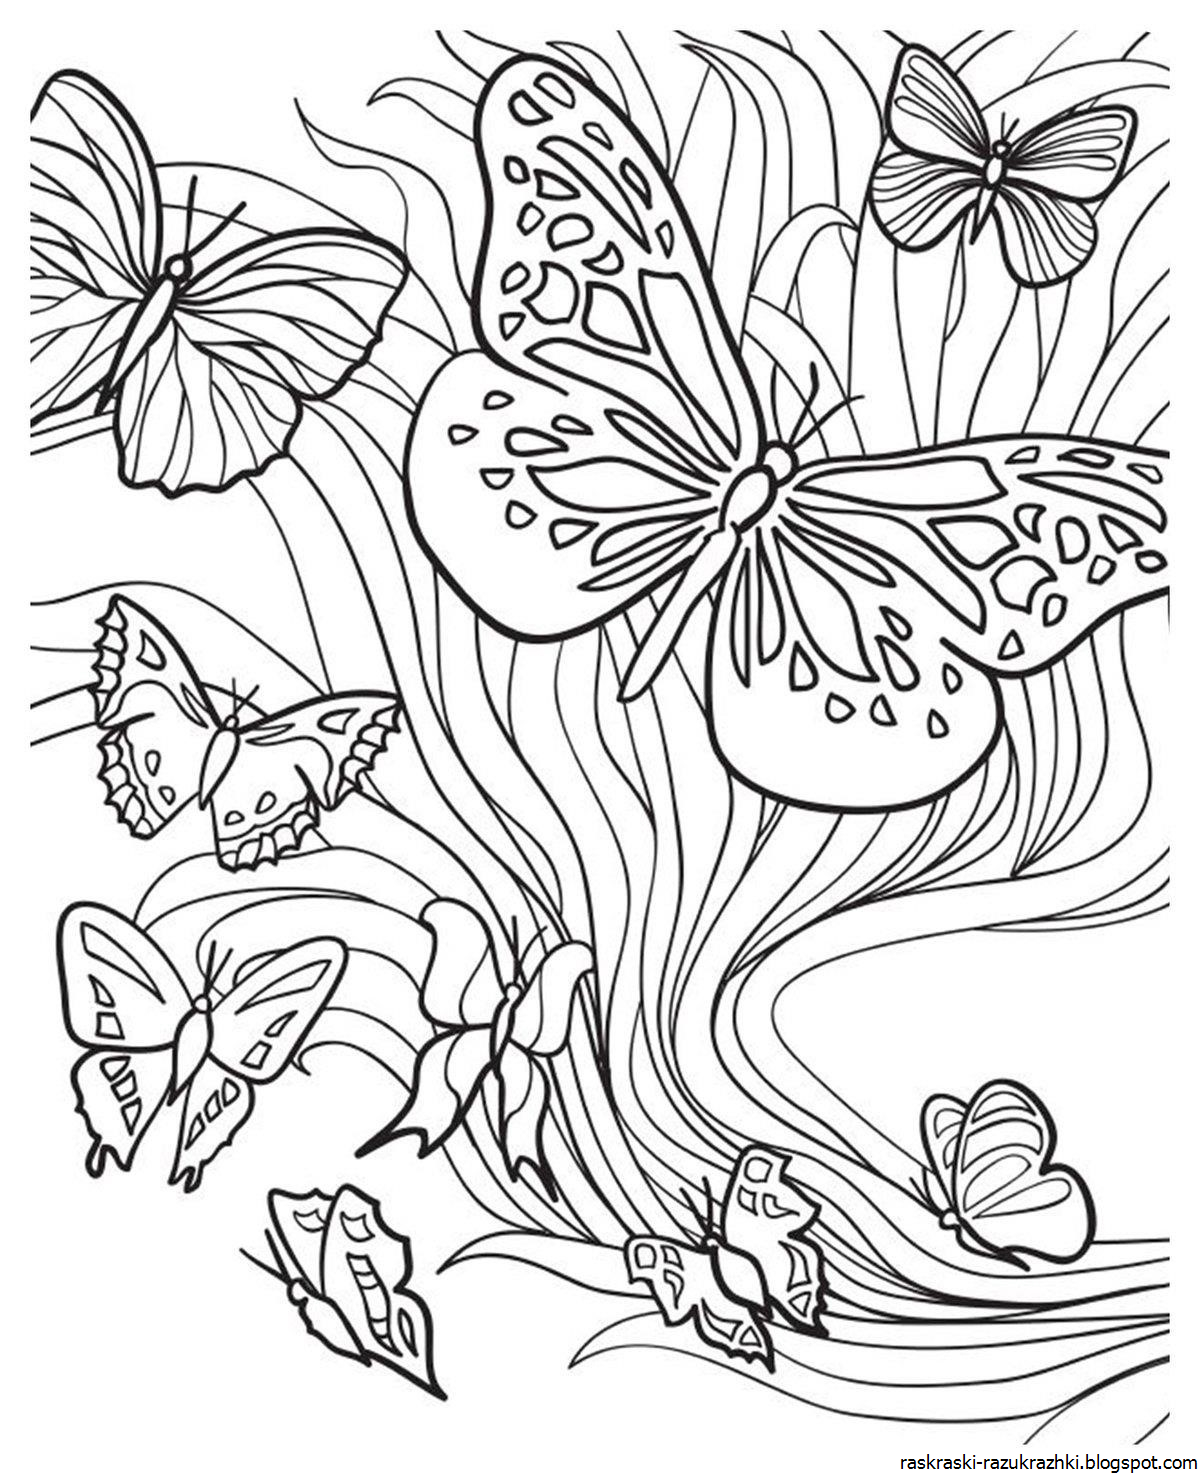 Раскраска очень красивая распечатать. Цветы и бабочки. Раскраска. Раскраска "бабочки". Бабочка на цветочке раскраска. Раскраски для девочек цветочки.